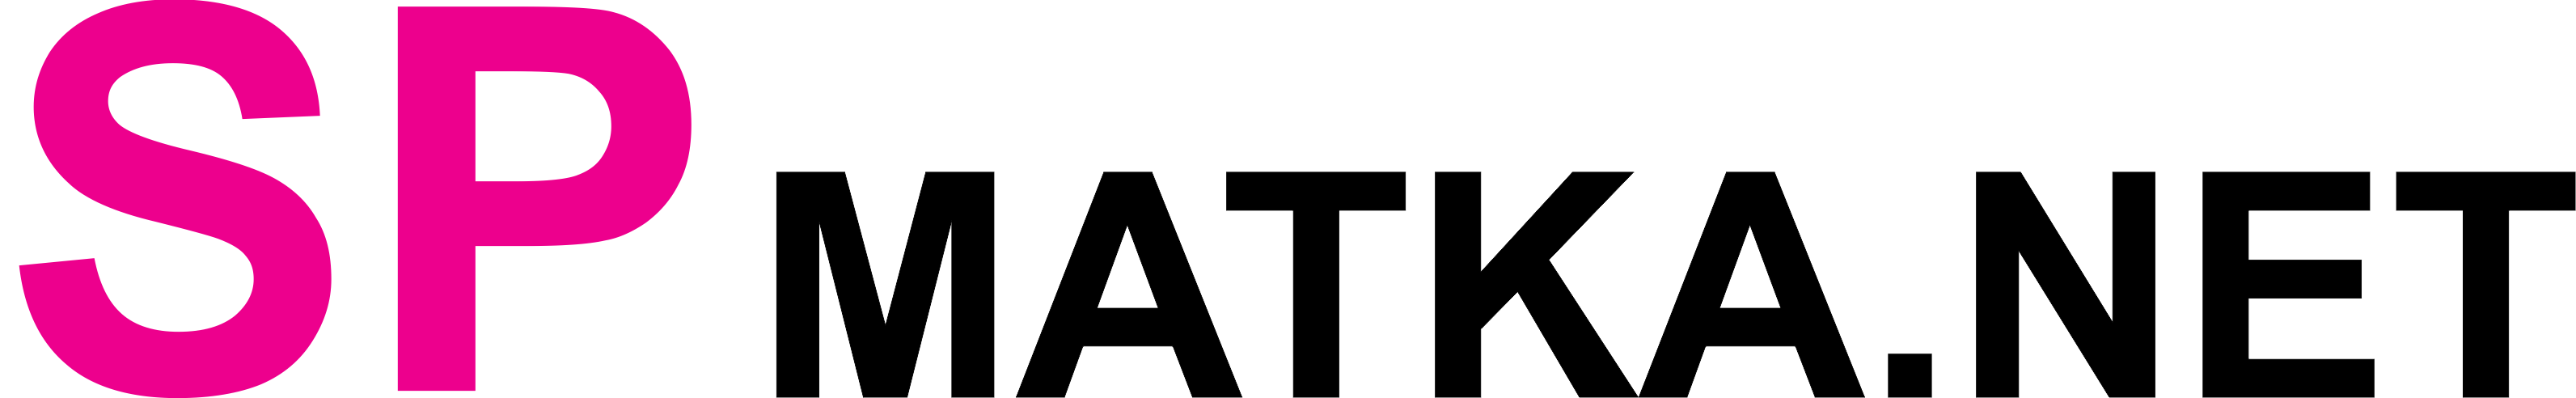 DpBoss - Logo of SpBoss SpMatka.Net